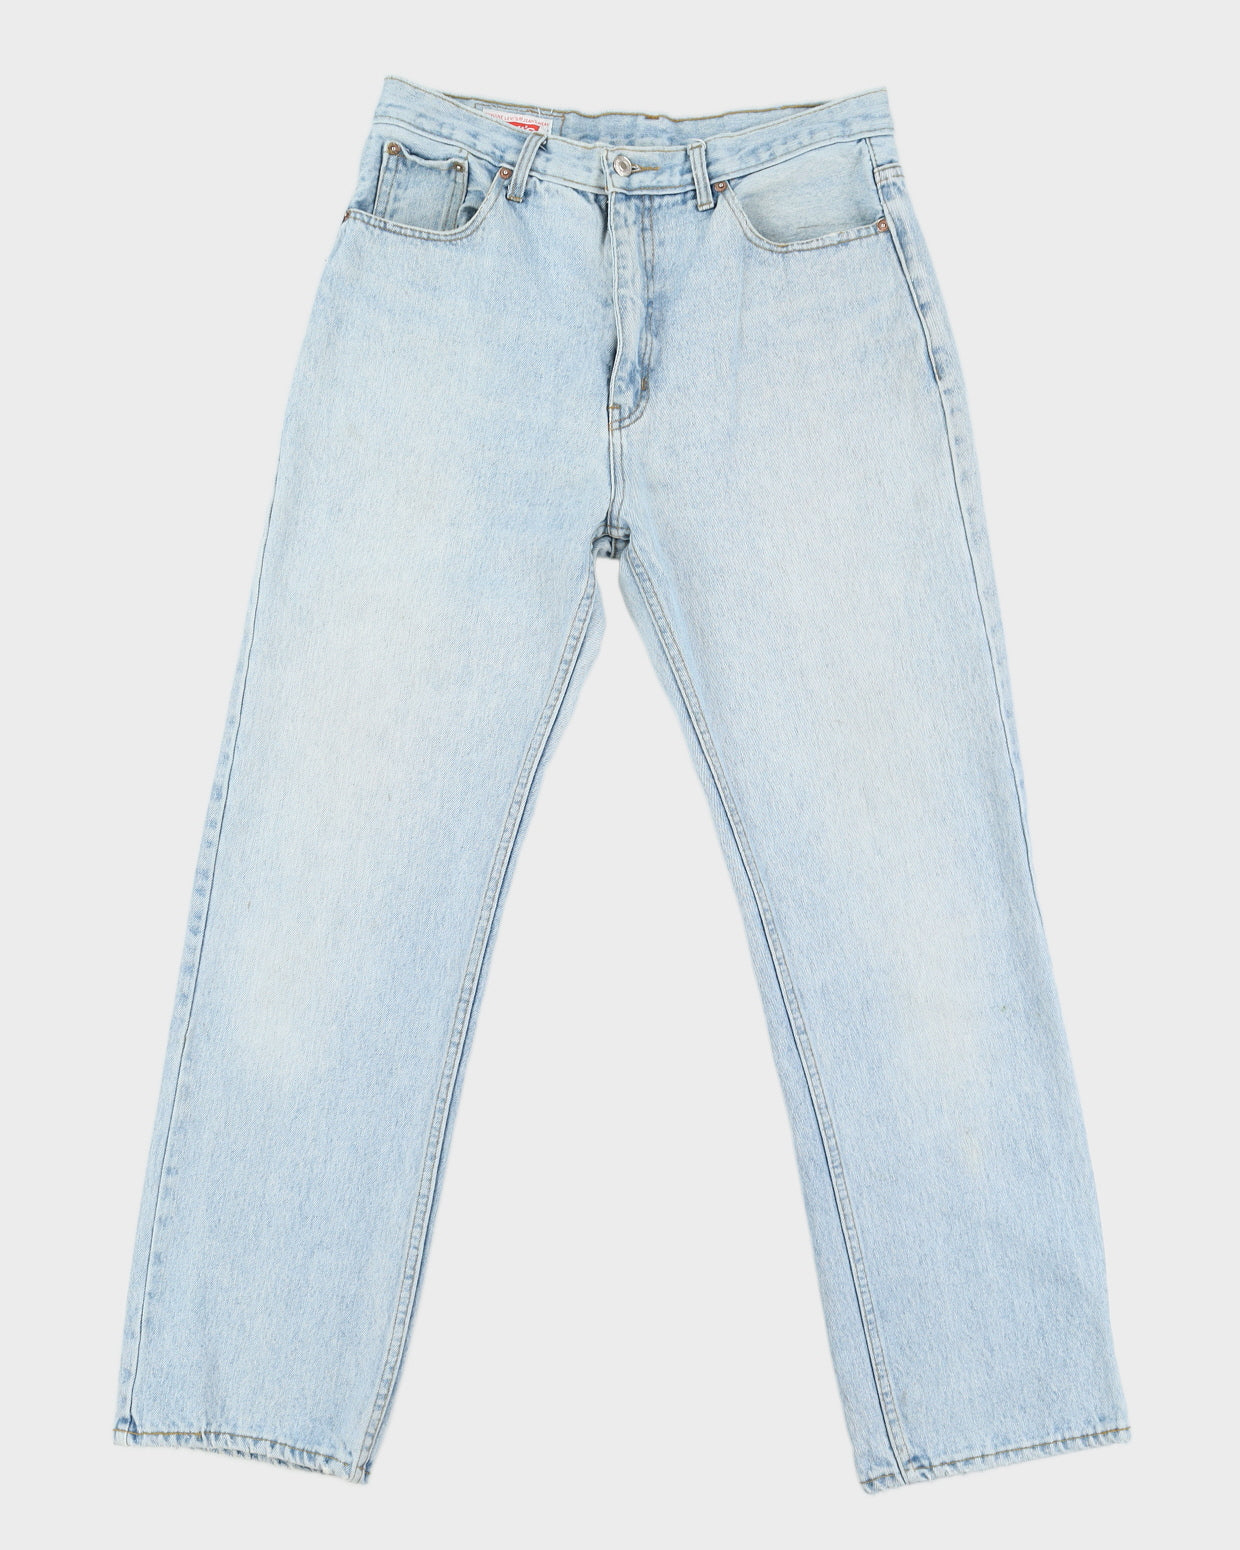 Vintage 80s Levi's 501 Jeans - W30 L29